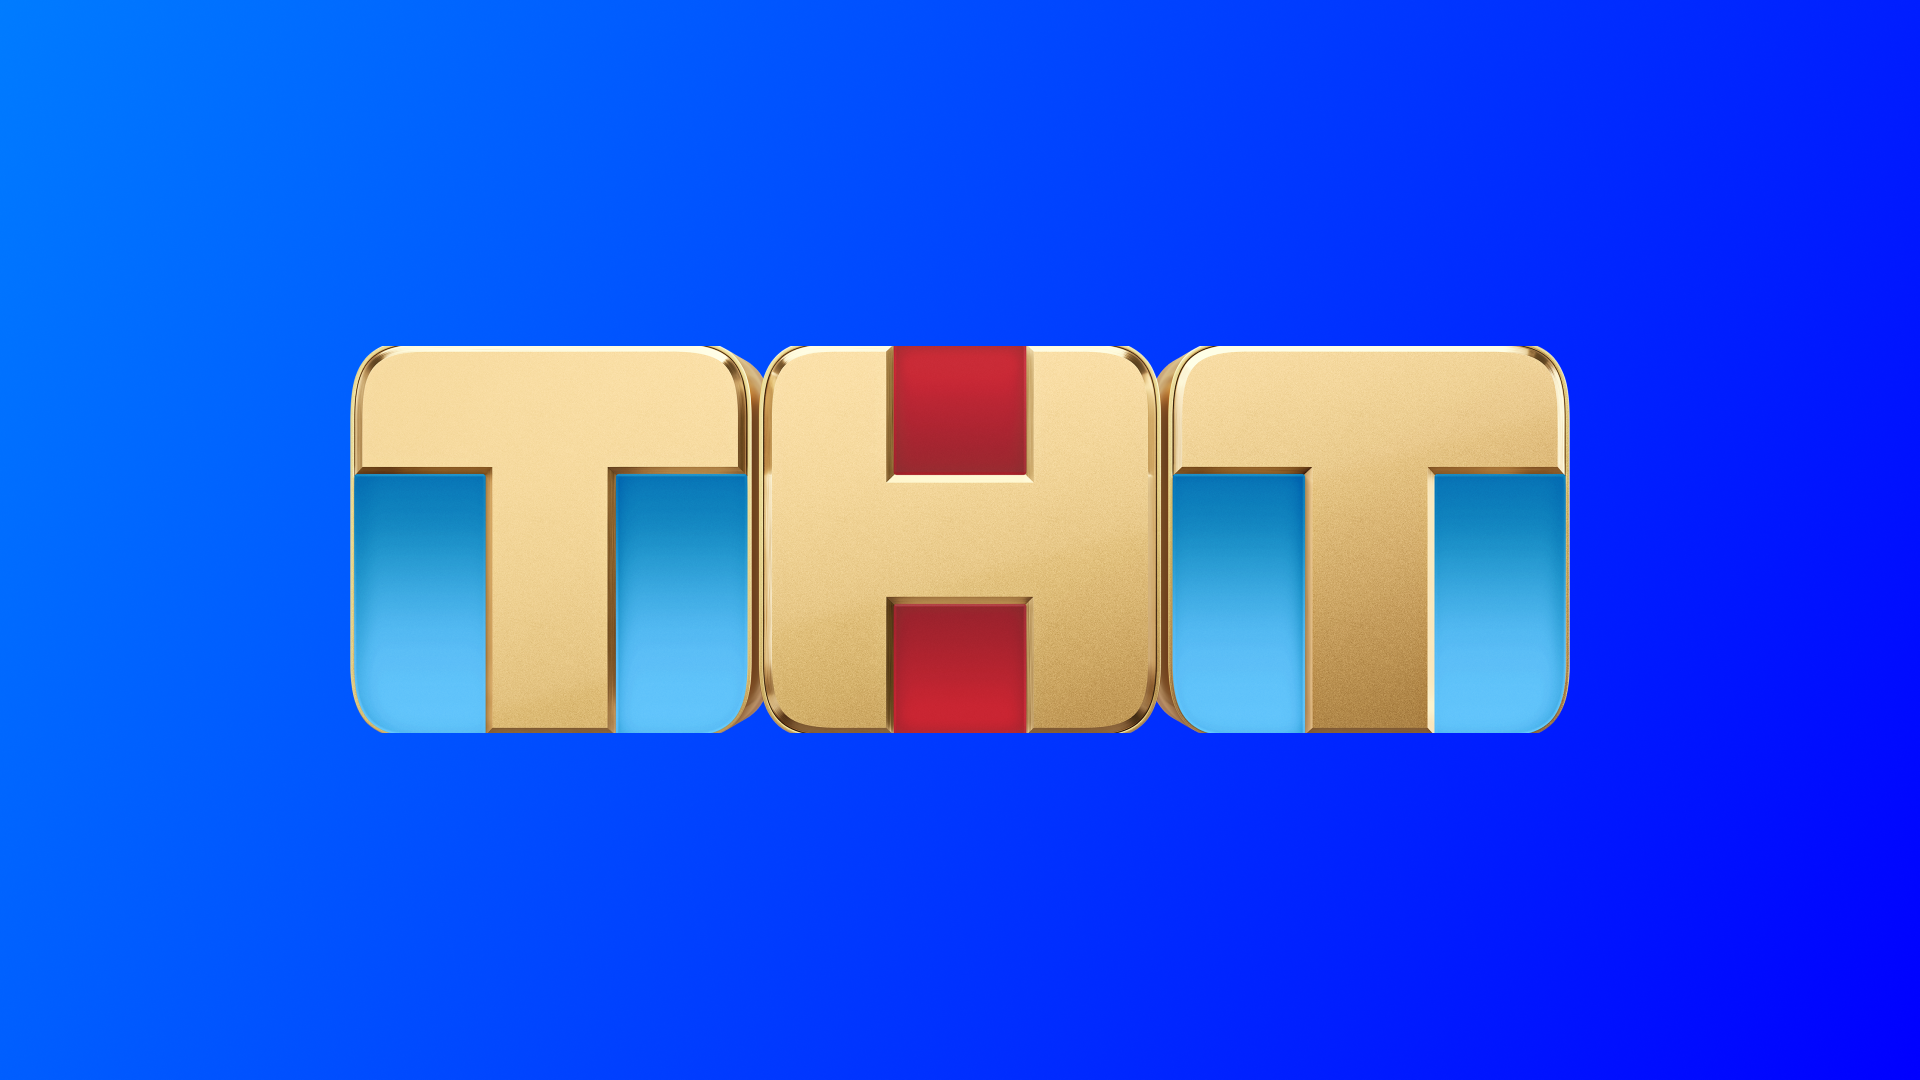 Телевизор прямой эфир тнт. ТНТ. Телеканал ТНТ. Логотип канала ТНТ. Тет (Телеканал).